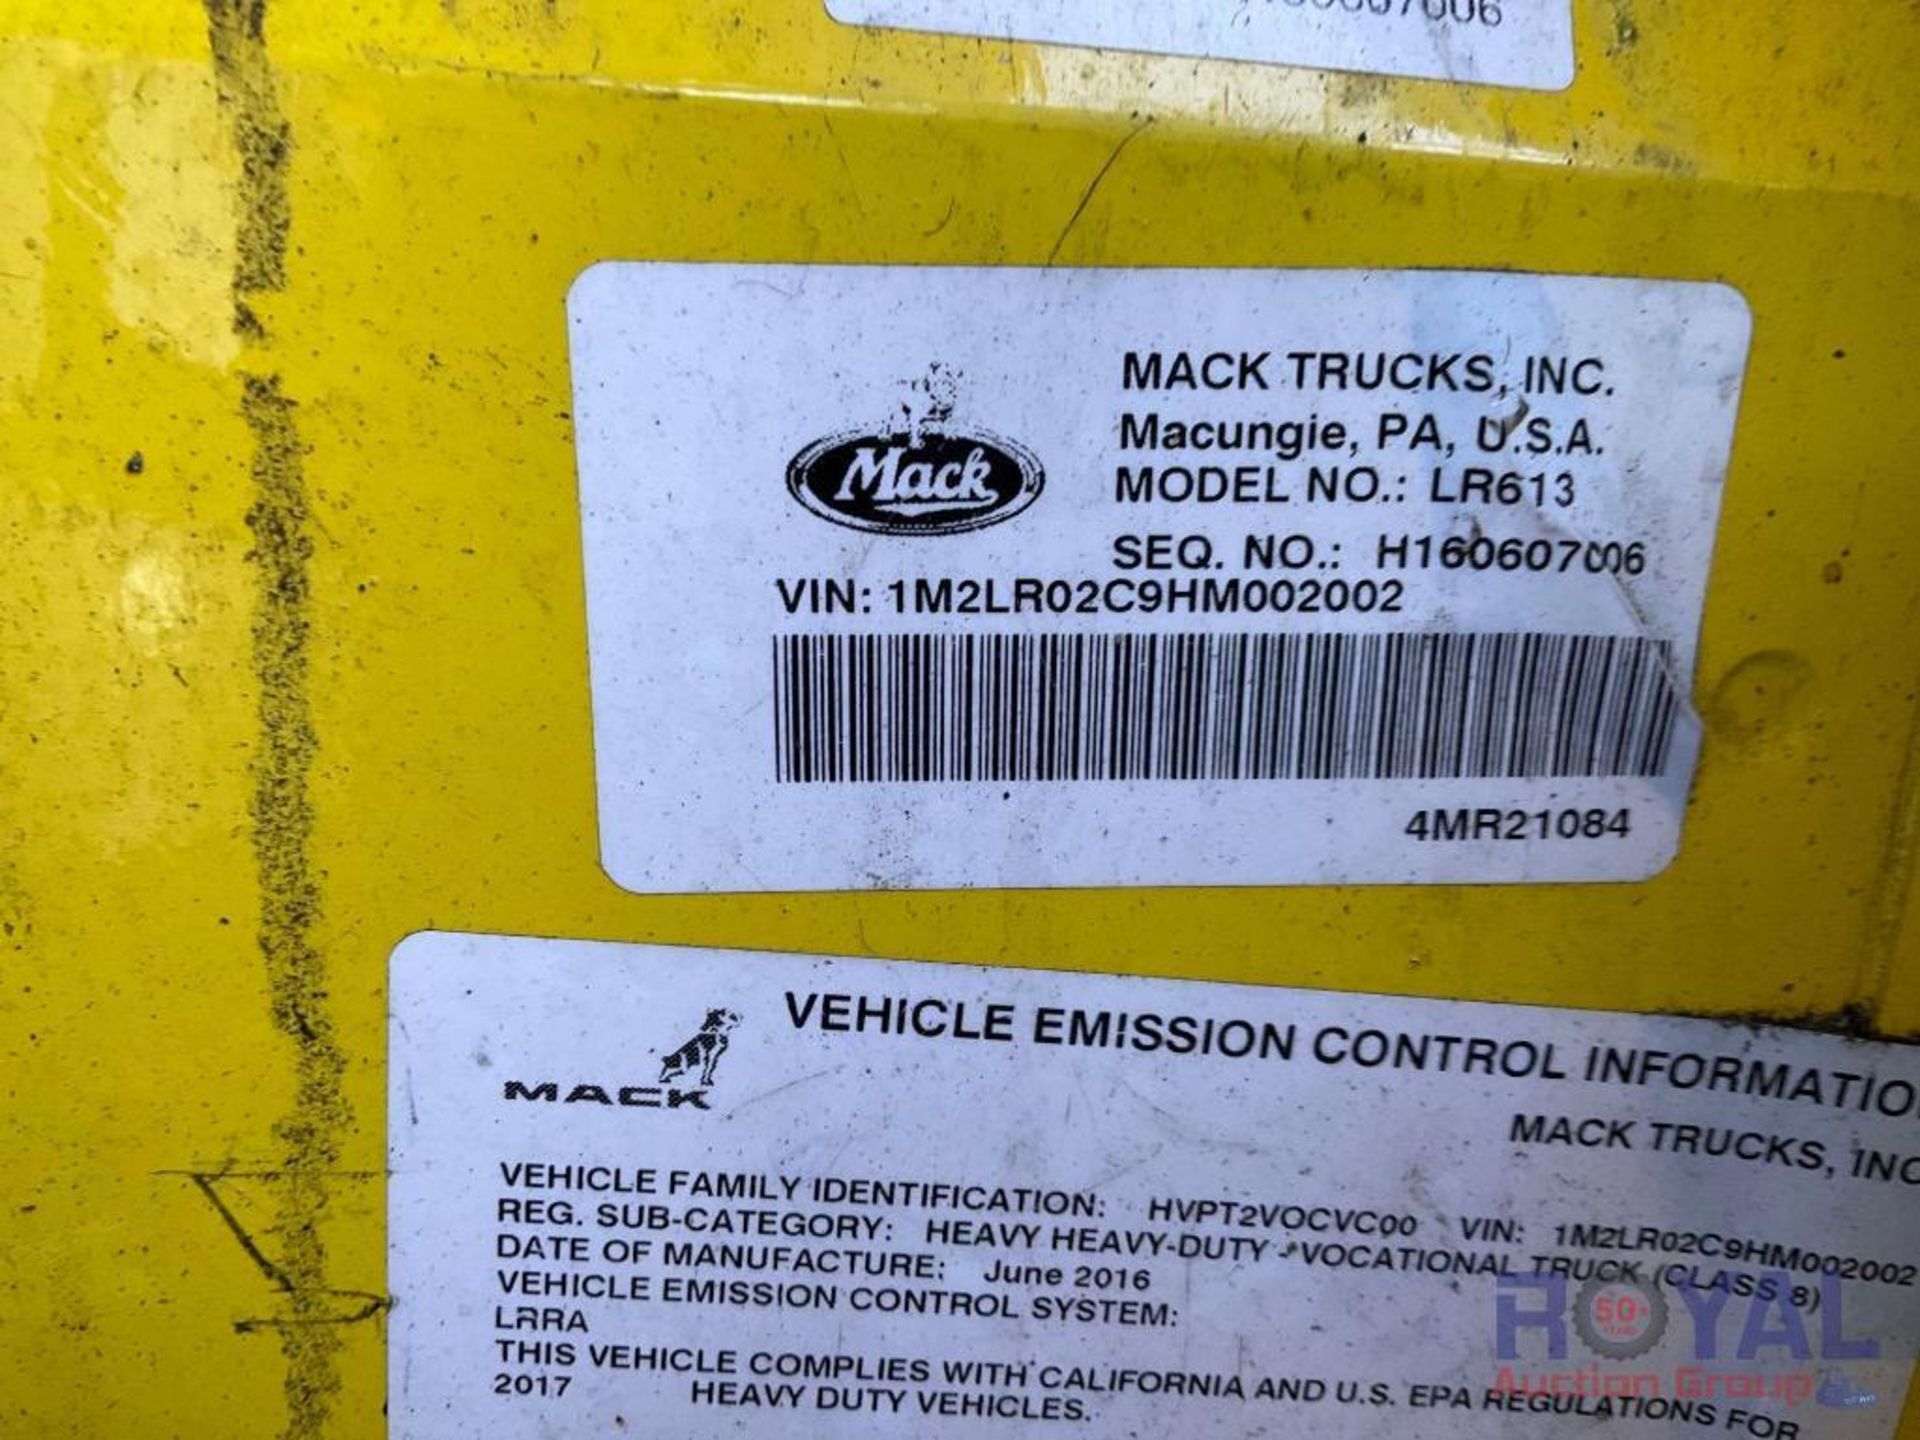 2017 Mack Front Loader Garbage Truck - Image 5 of 61